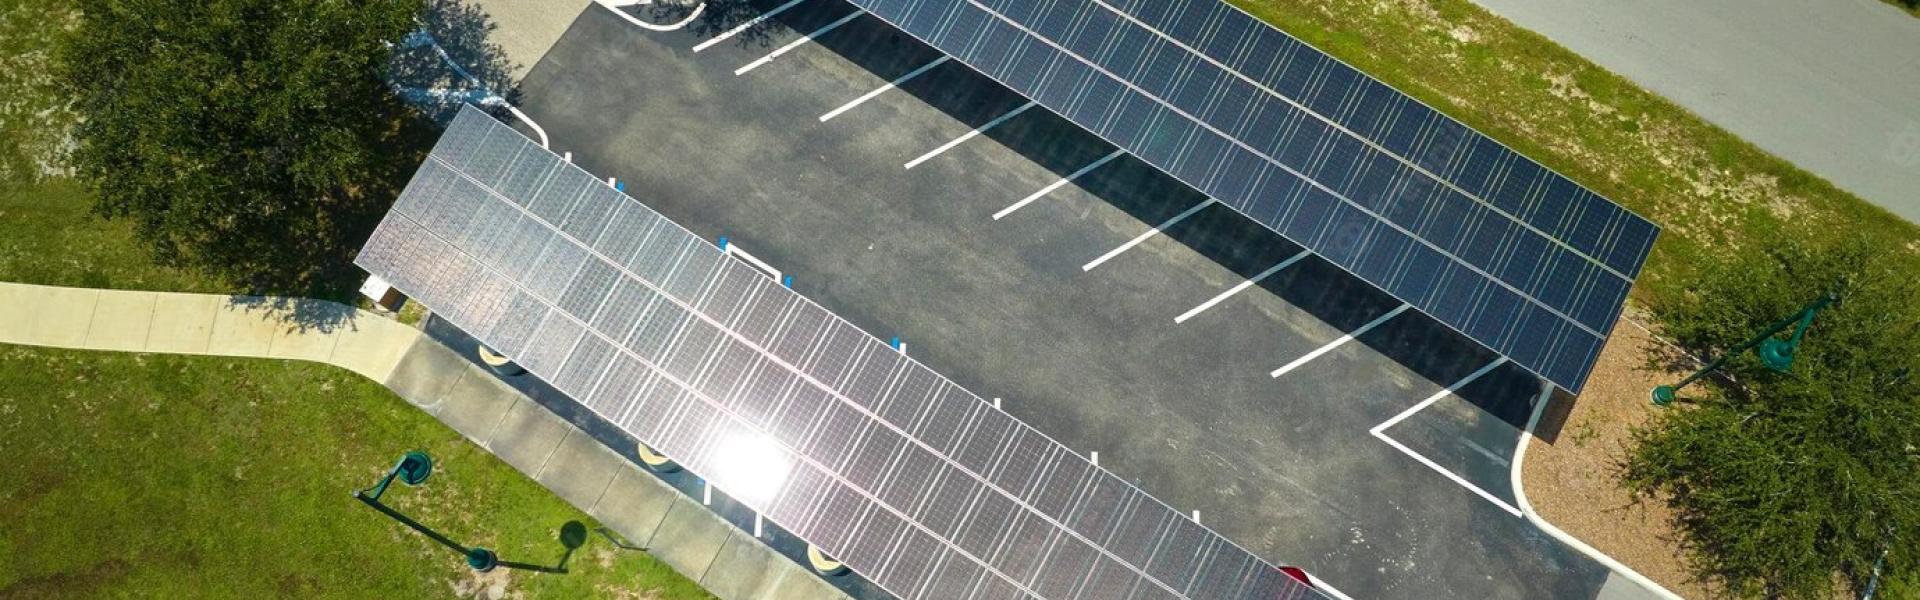 Ombrière photovoltaïque - Panneaux solaires - Solutions d'énergies renouvelables pour les agriculteurs, industriels et collectivités